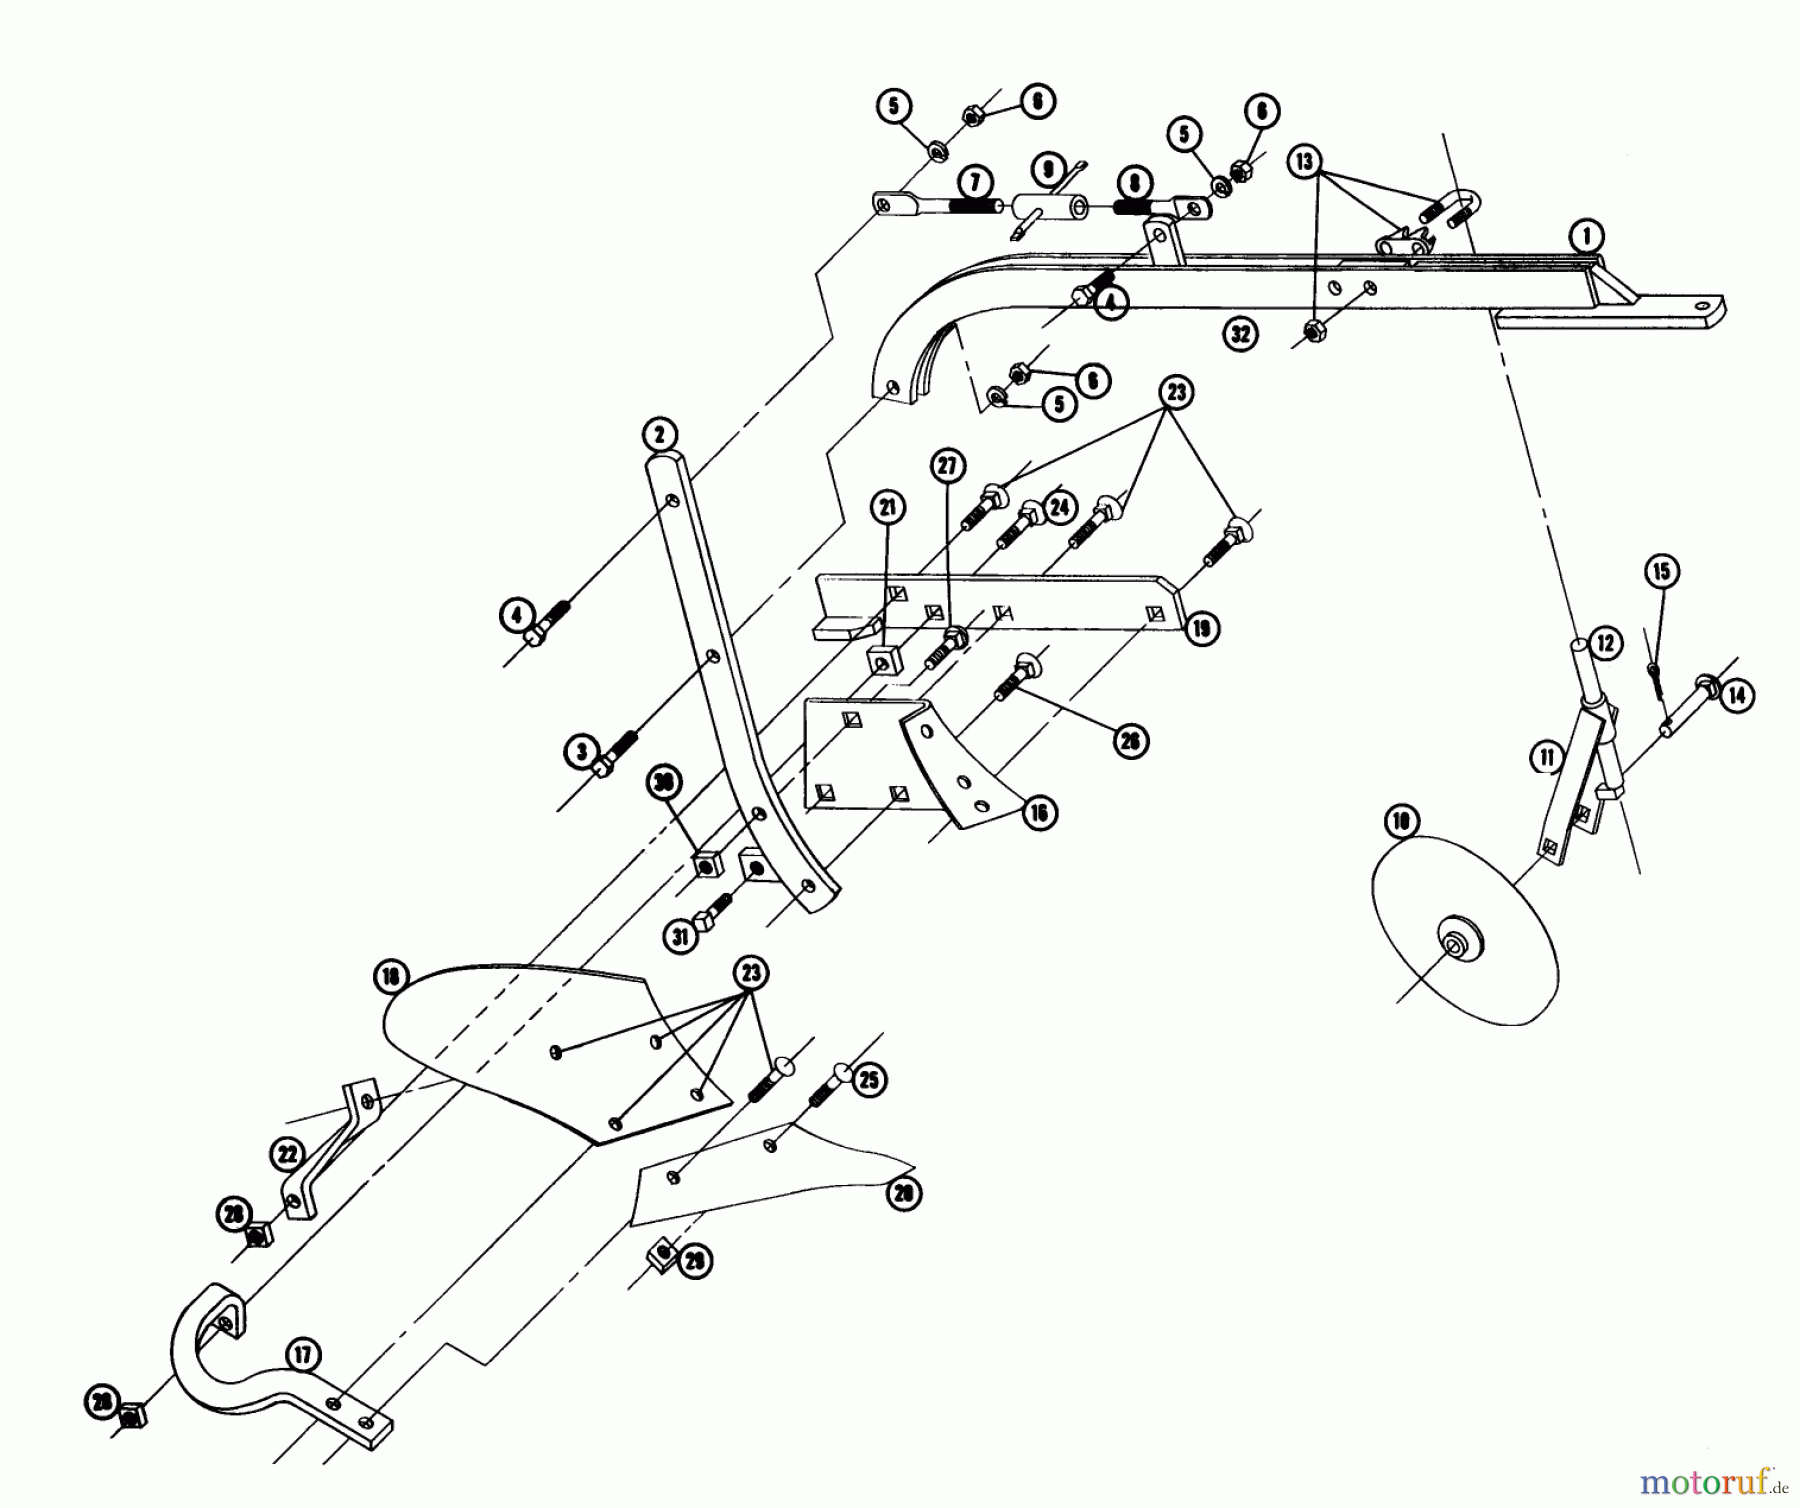  Toro Neu Utility Carts LTD-24 - Toro 5.5 Cubic Foot Cart, 1960 PLOW & COULTER PP-10HD PARTS LIST